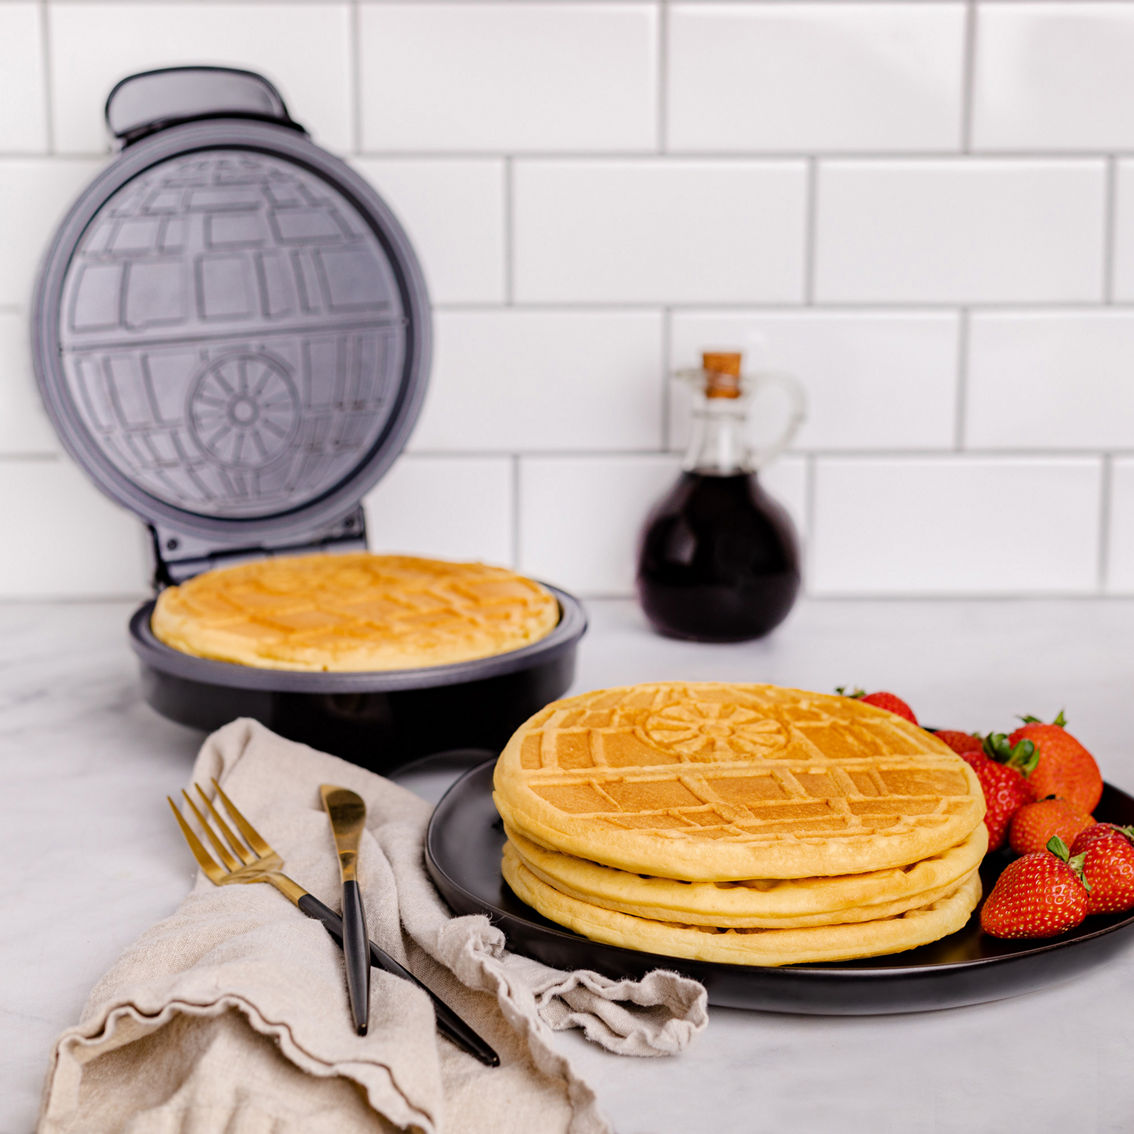 Uncanny Brands Star Wars Halo Death Star Waffle Maker - Image 7 of 10